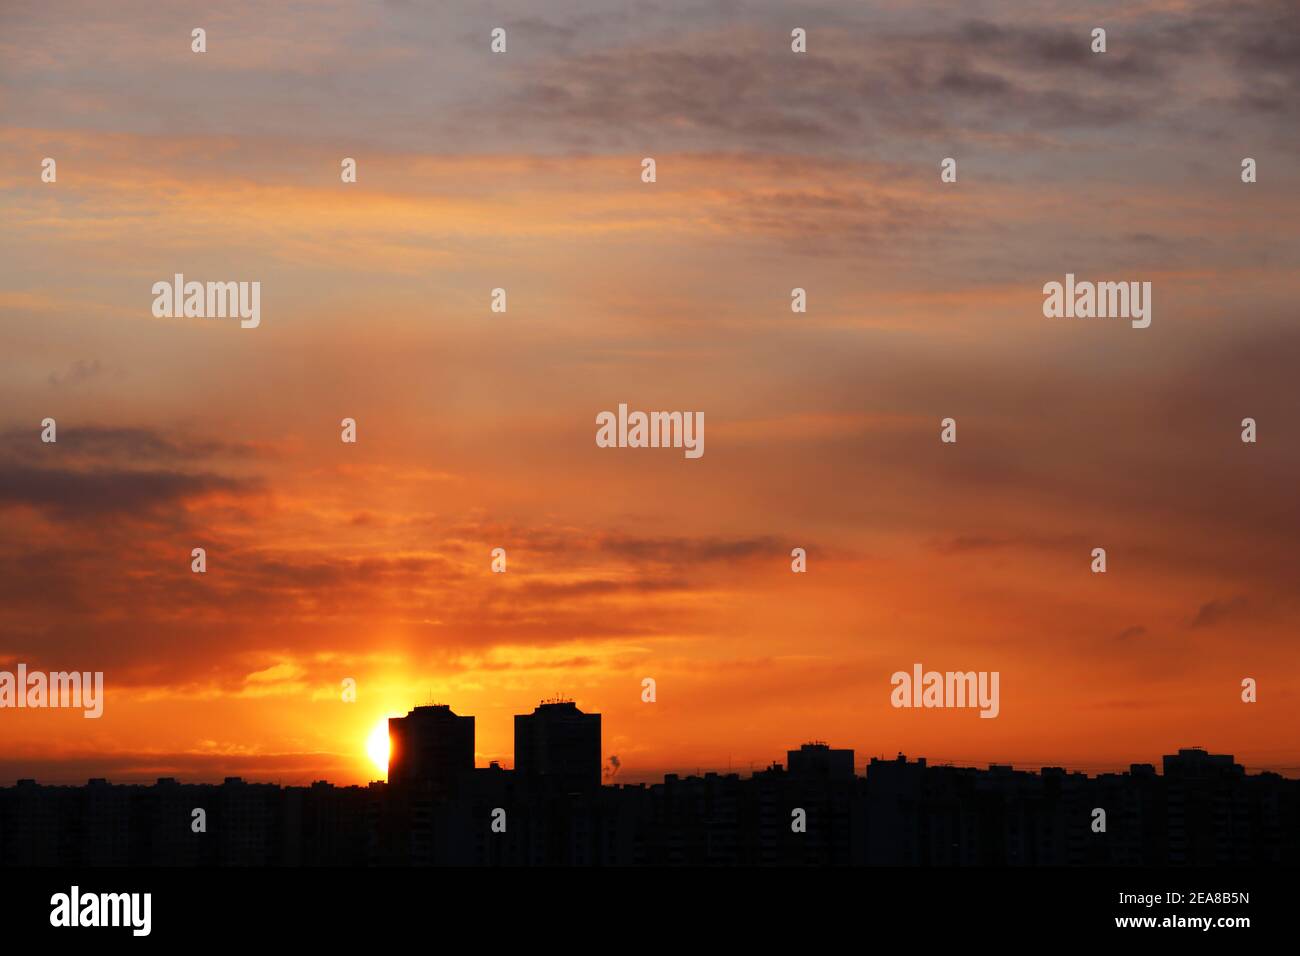 Puesta de sol sobre la ciudad, vista panorámica. Puesta de sol y cielo naranja con espectaculares nubes sobre las siluetas de los edificios residenciales Foto de stock